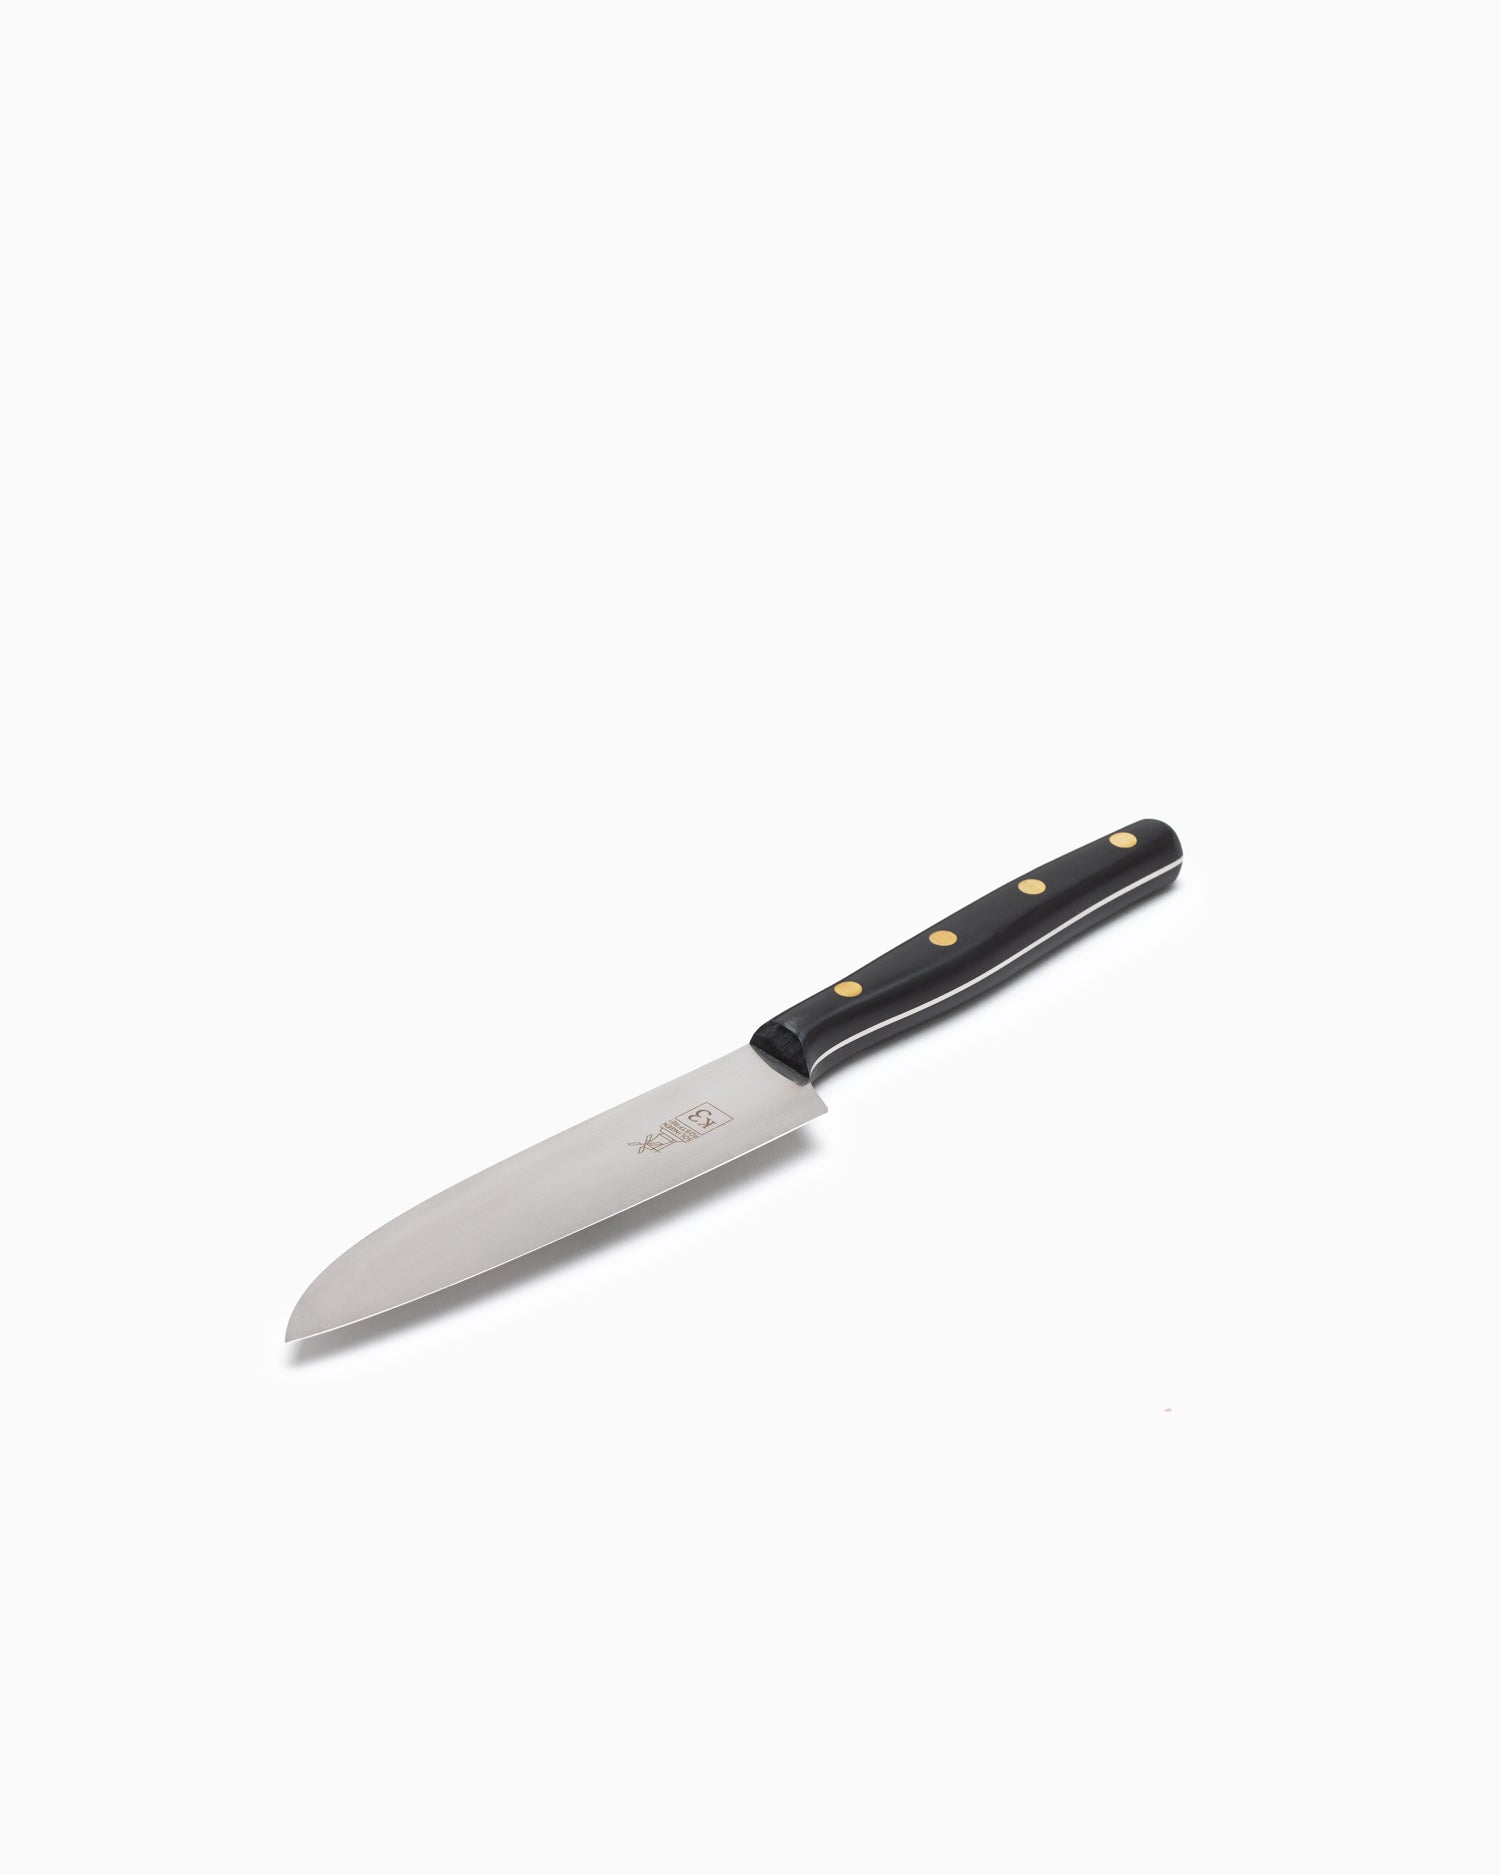 Robert Herder K3 Kitchen Knife - Stainless